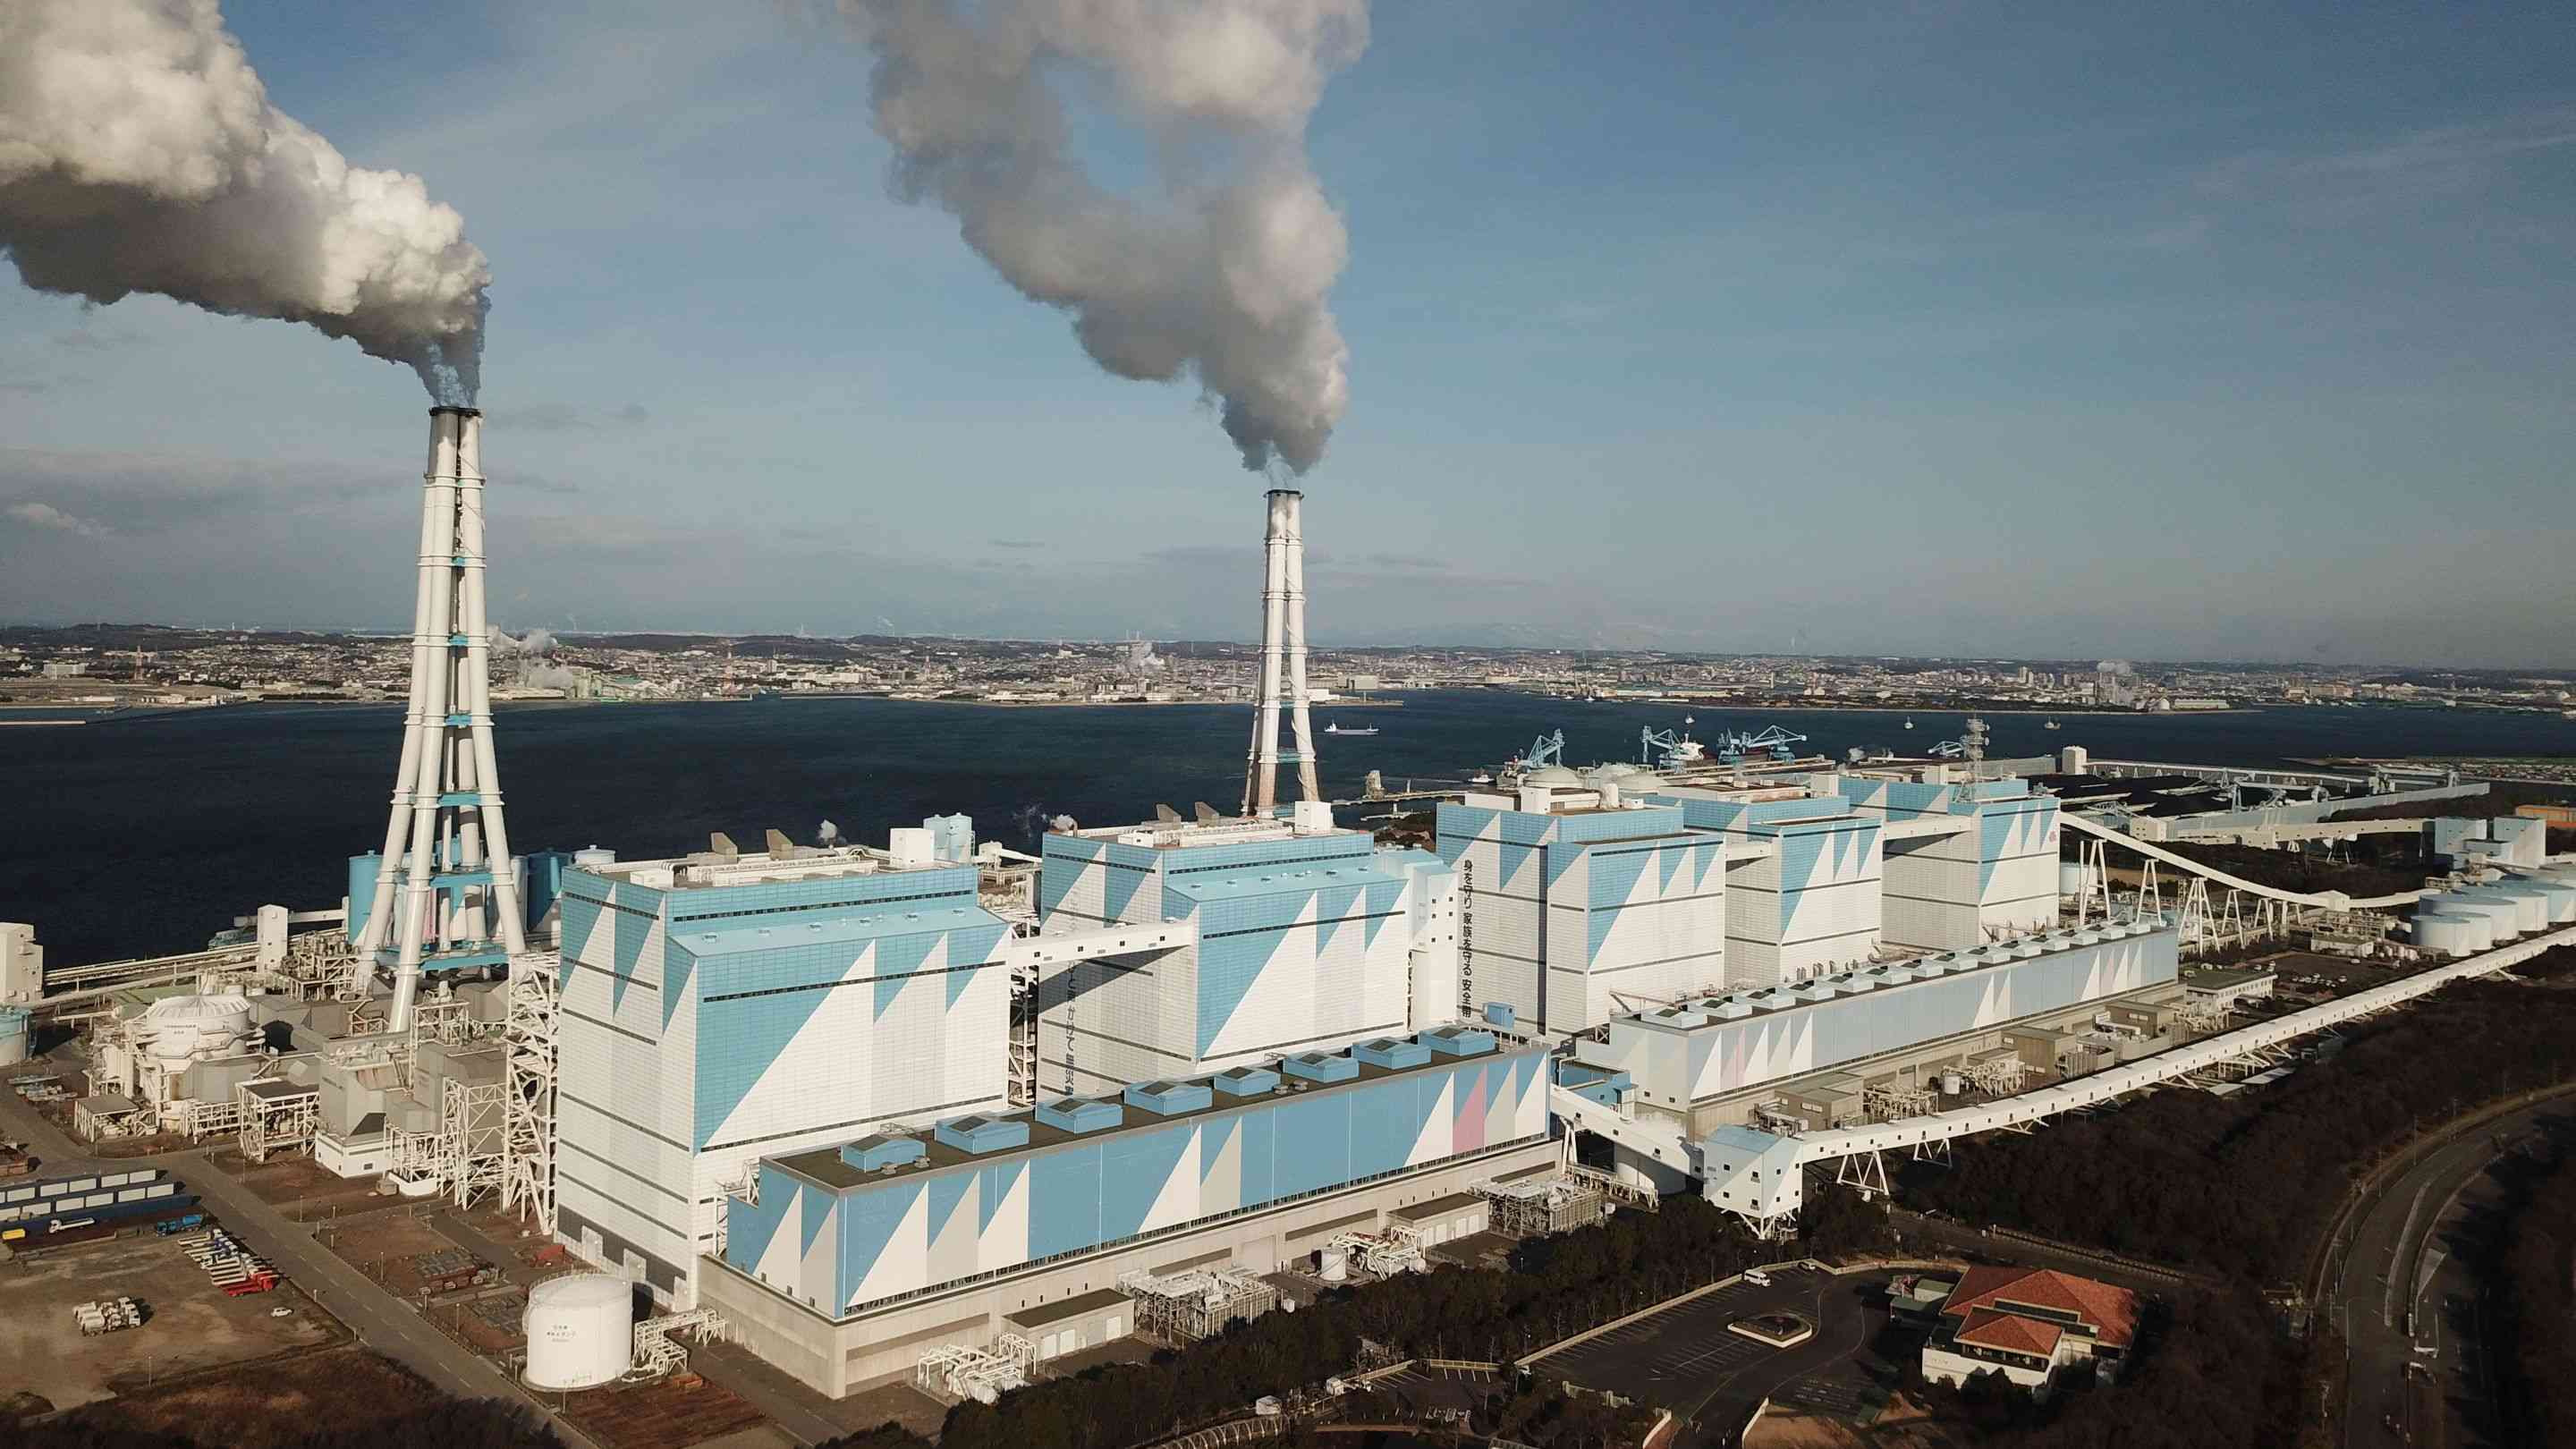 Das Kohlekraftwerk Hekinan, mit einer installierten Leistung von 4,1 Gigawatt, das grösste seiner Art in Japan. 10 Millionen Tonnen Kohle werden jährlich verfeuert. 